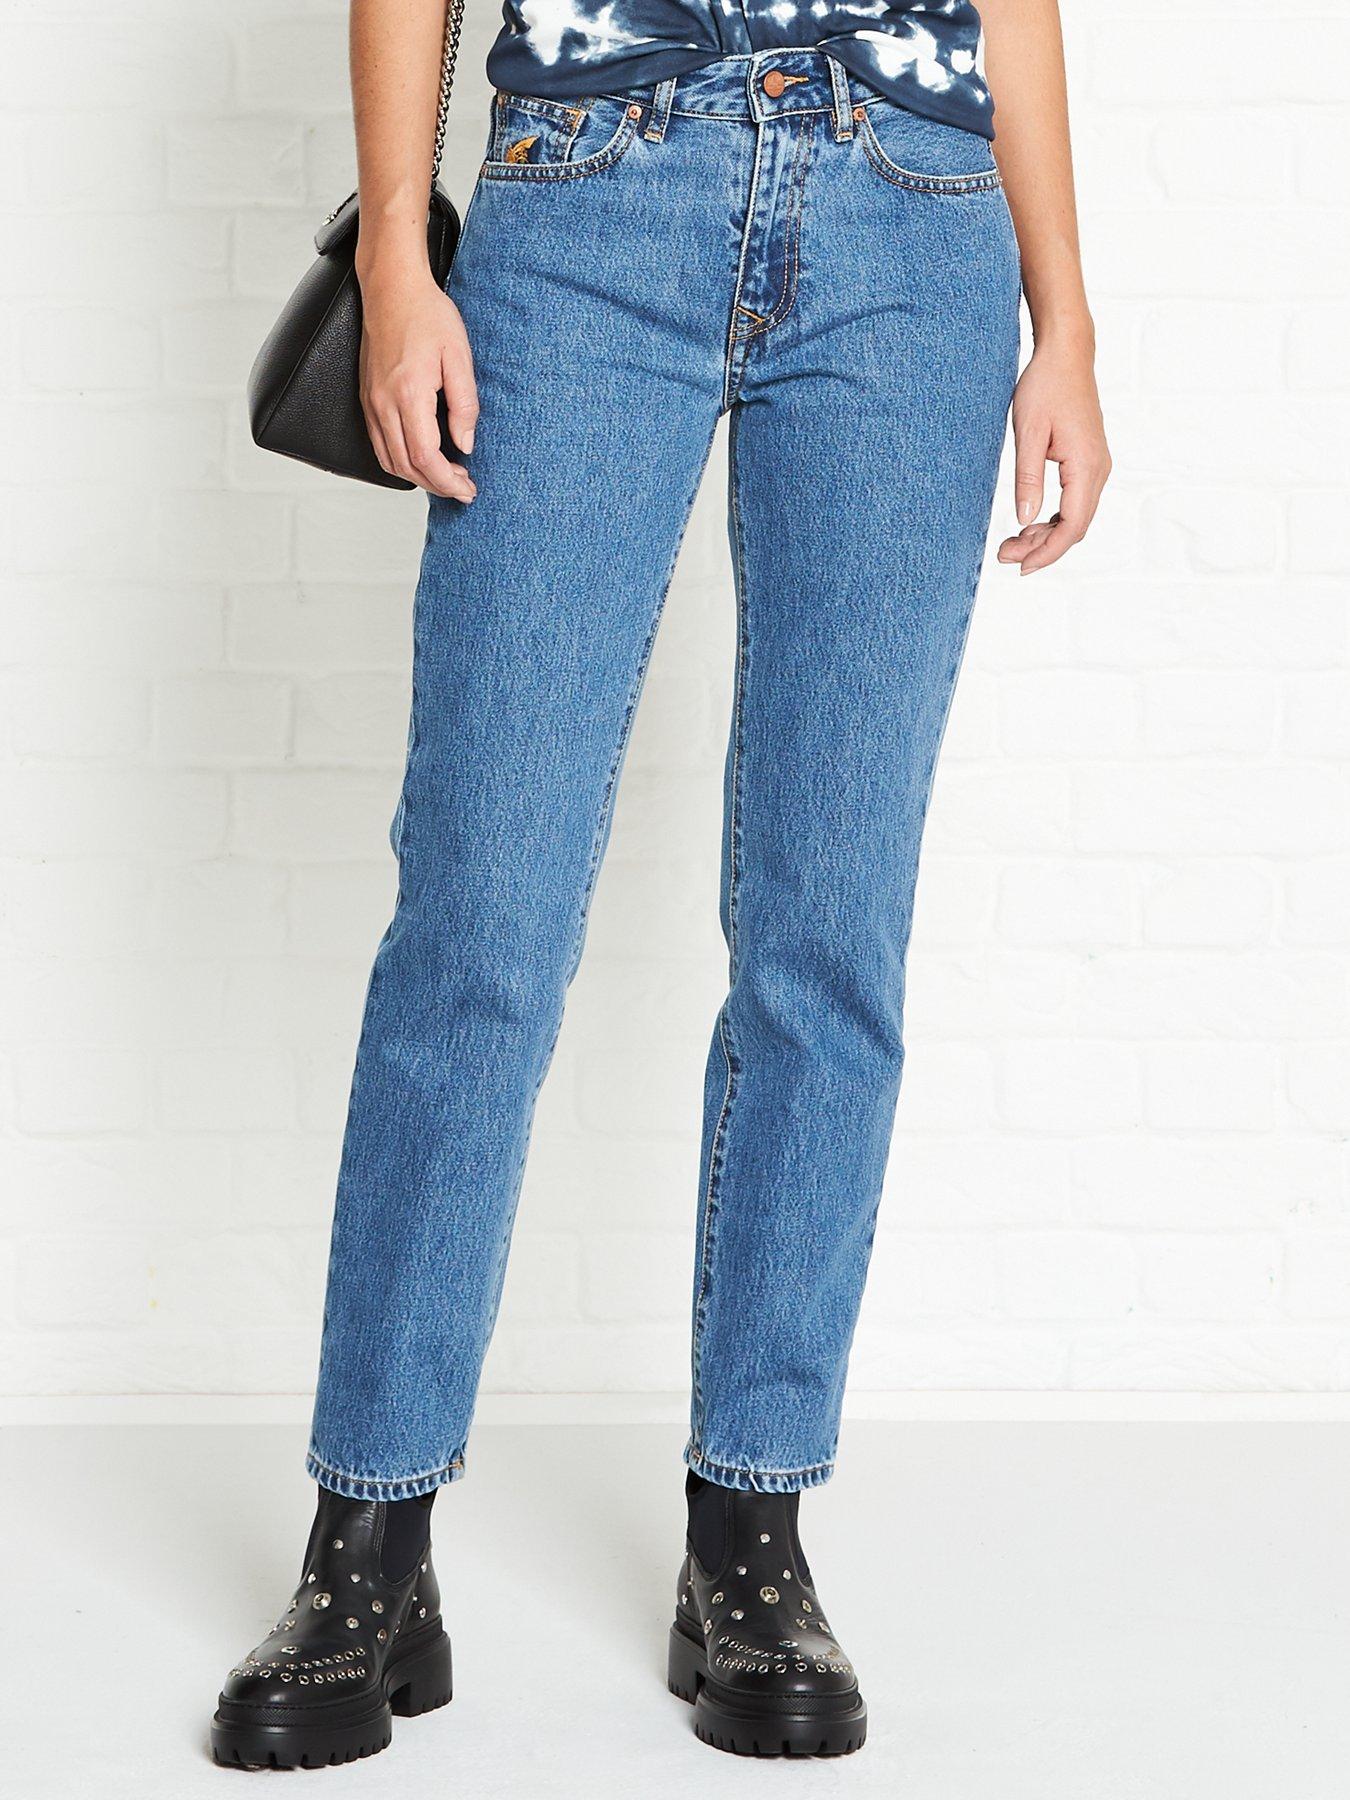 vivienne westwood skinny jeans mens